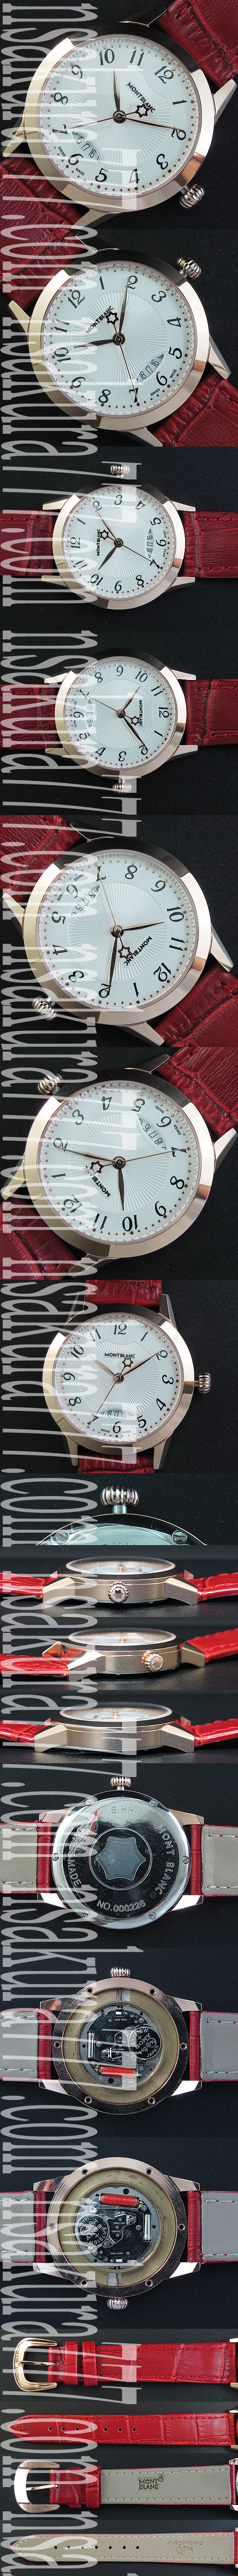 レディース腕時計モンブラン(14Kイエローゴールド素材)